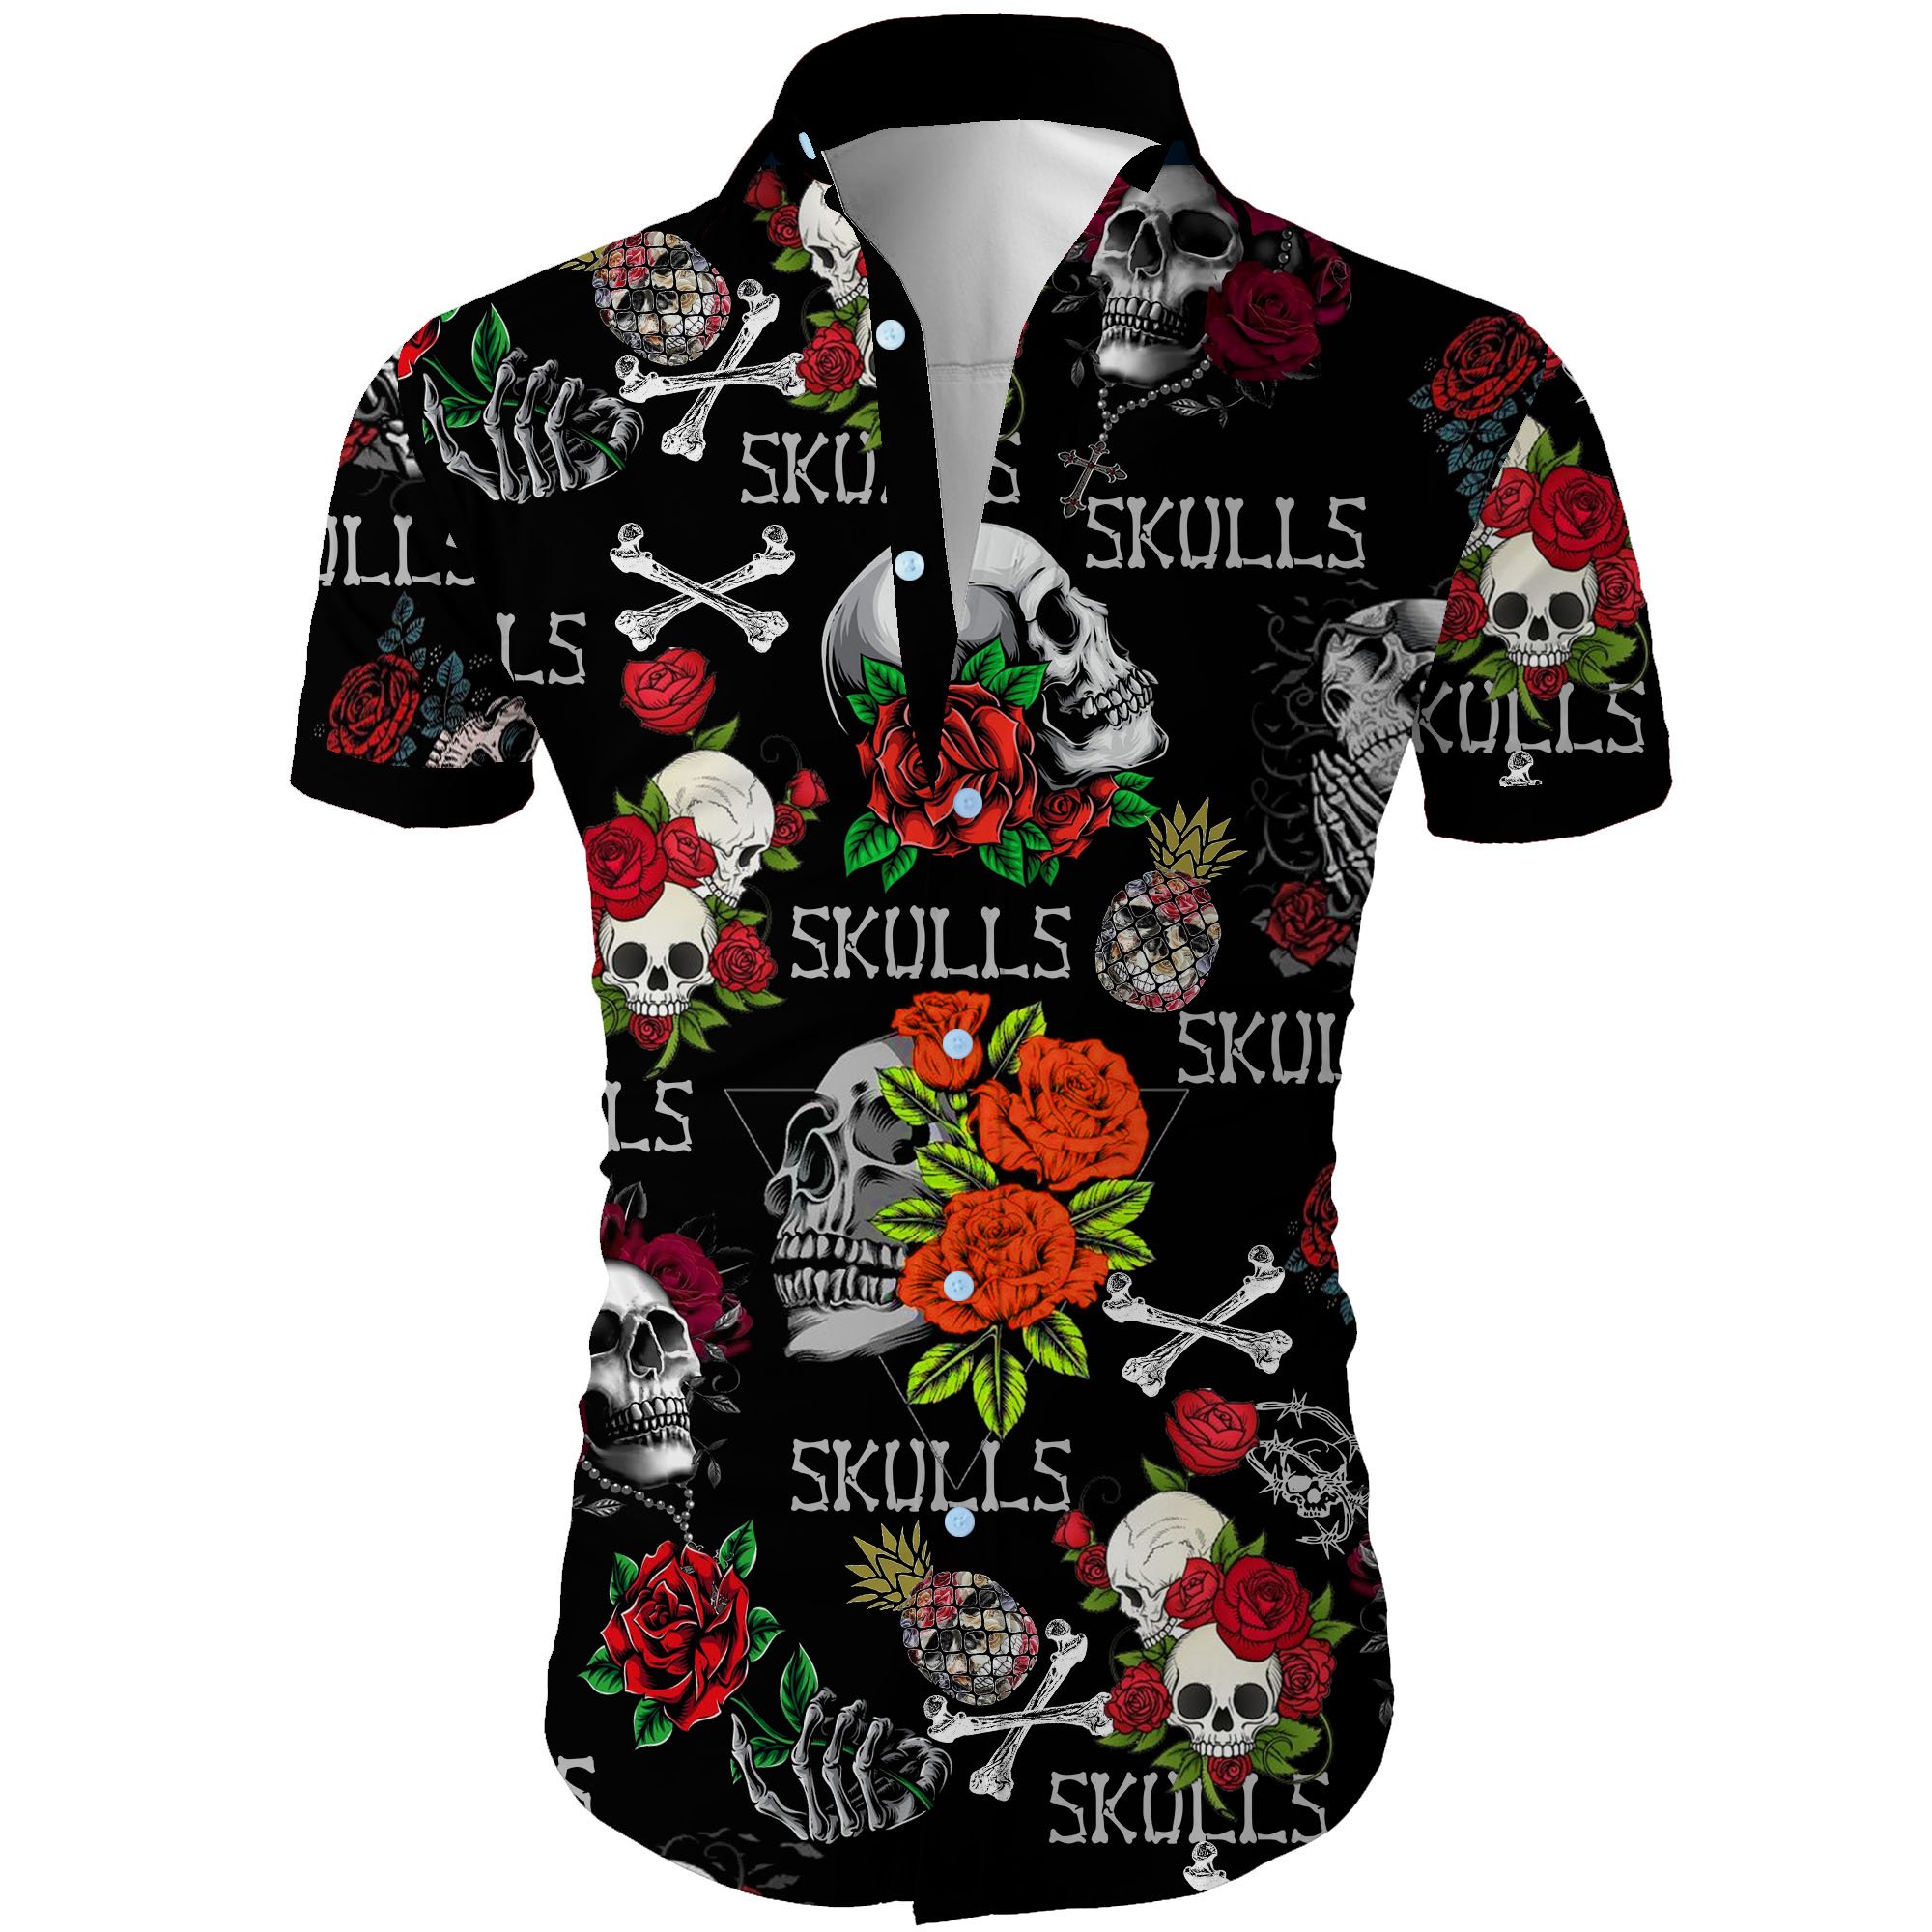 Skull and roses all over printed hawaiian shirt 1